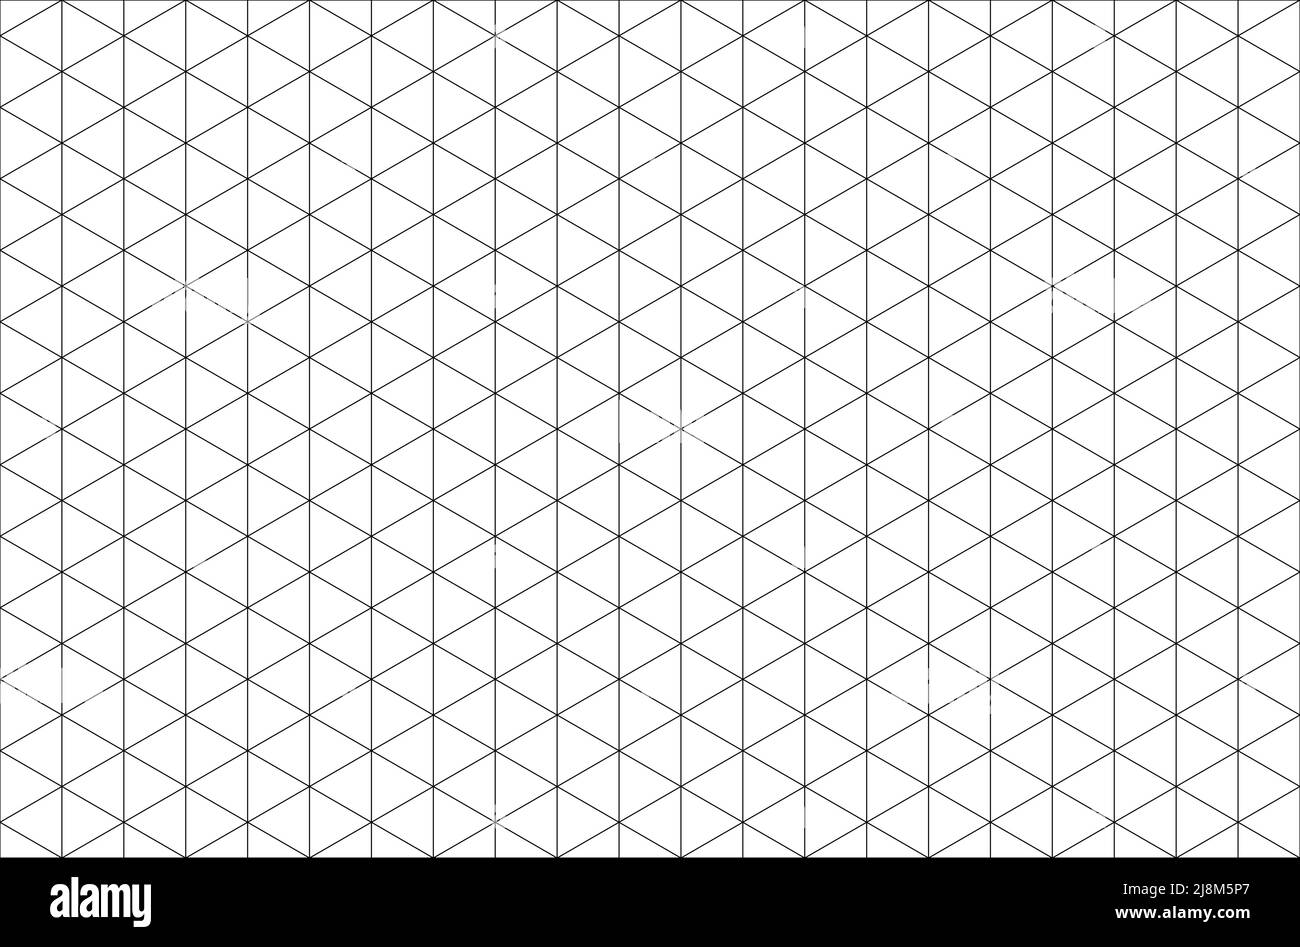 Isometric grid Imágenes de stock en blanco y negro - Alamy